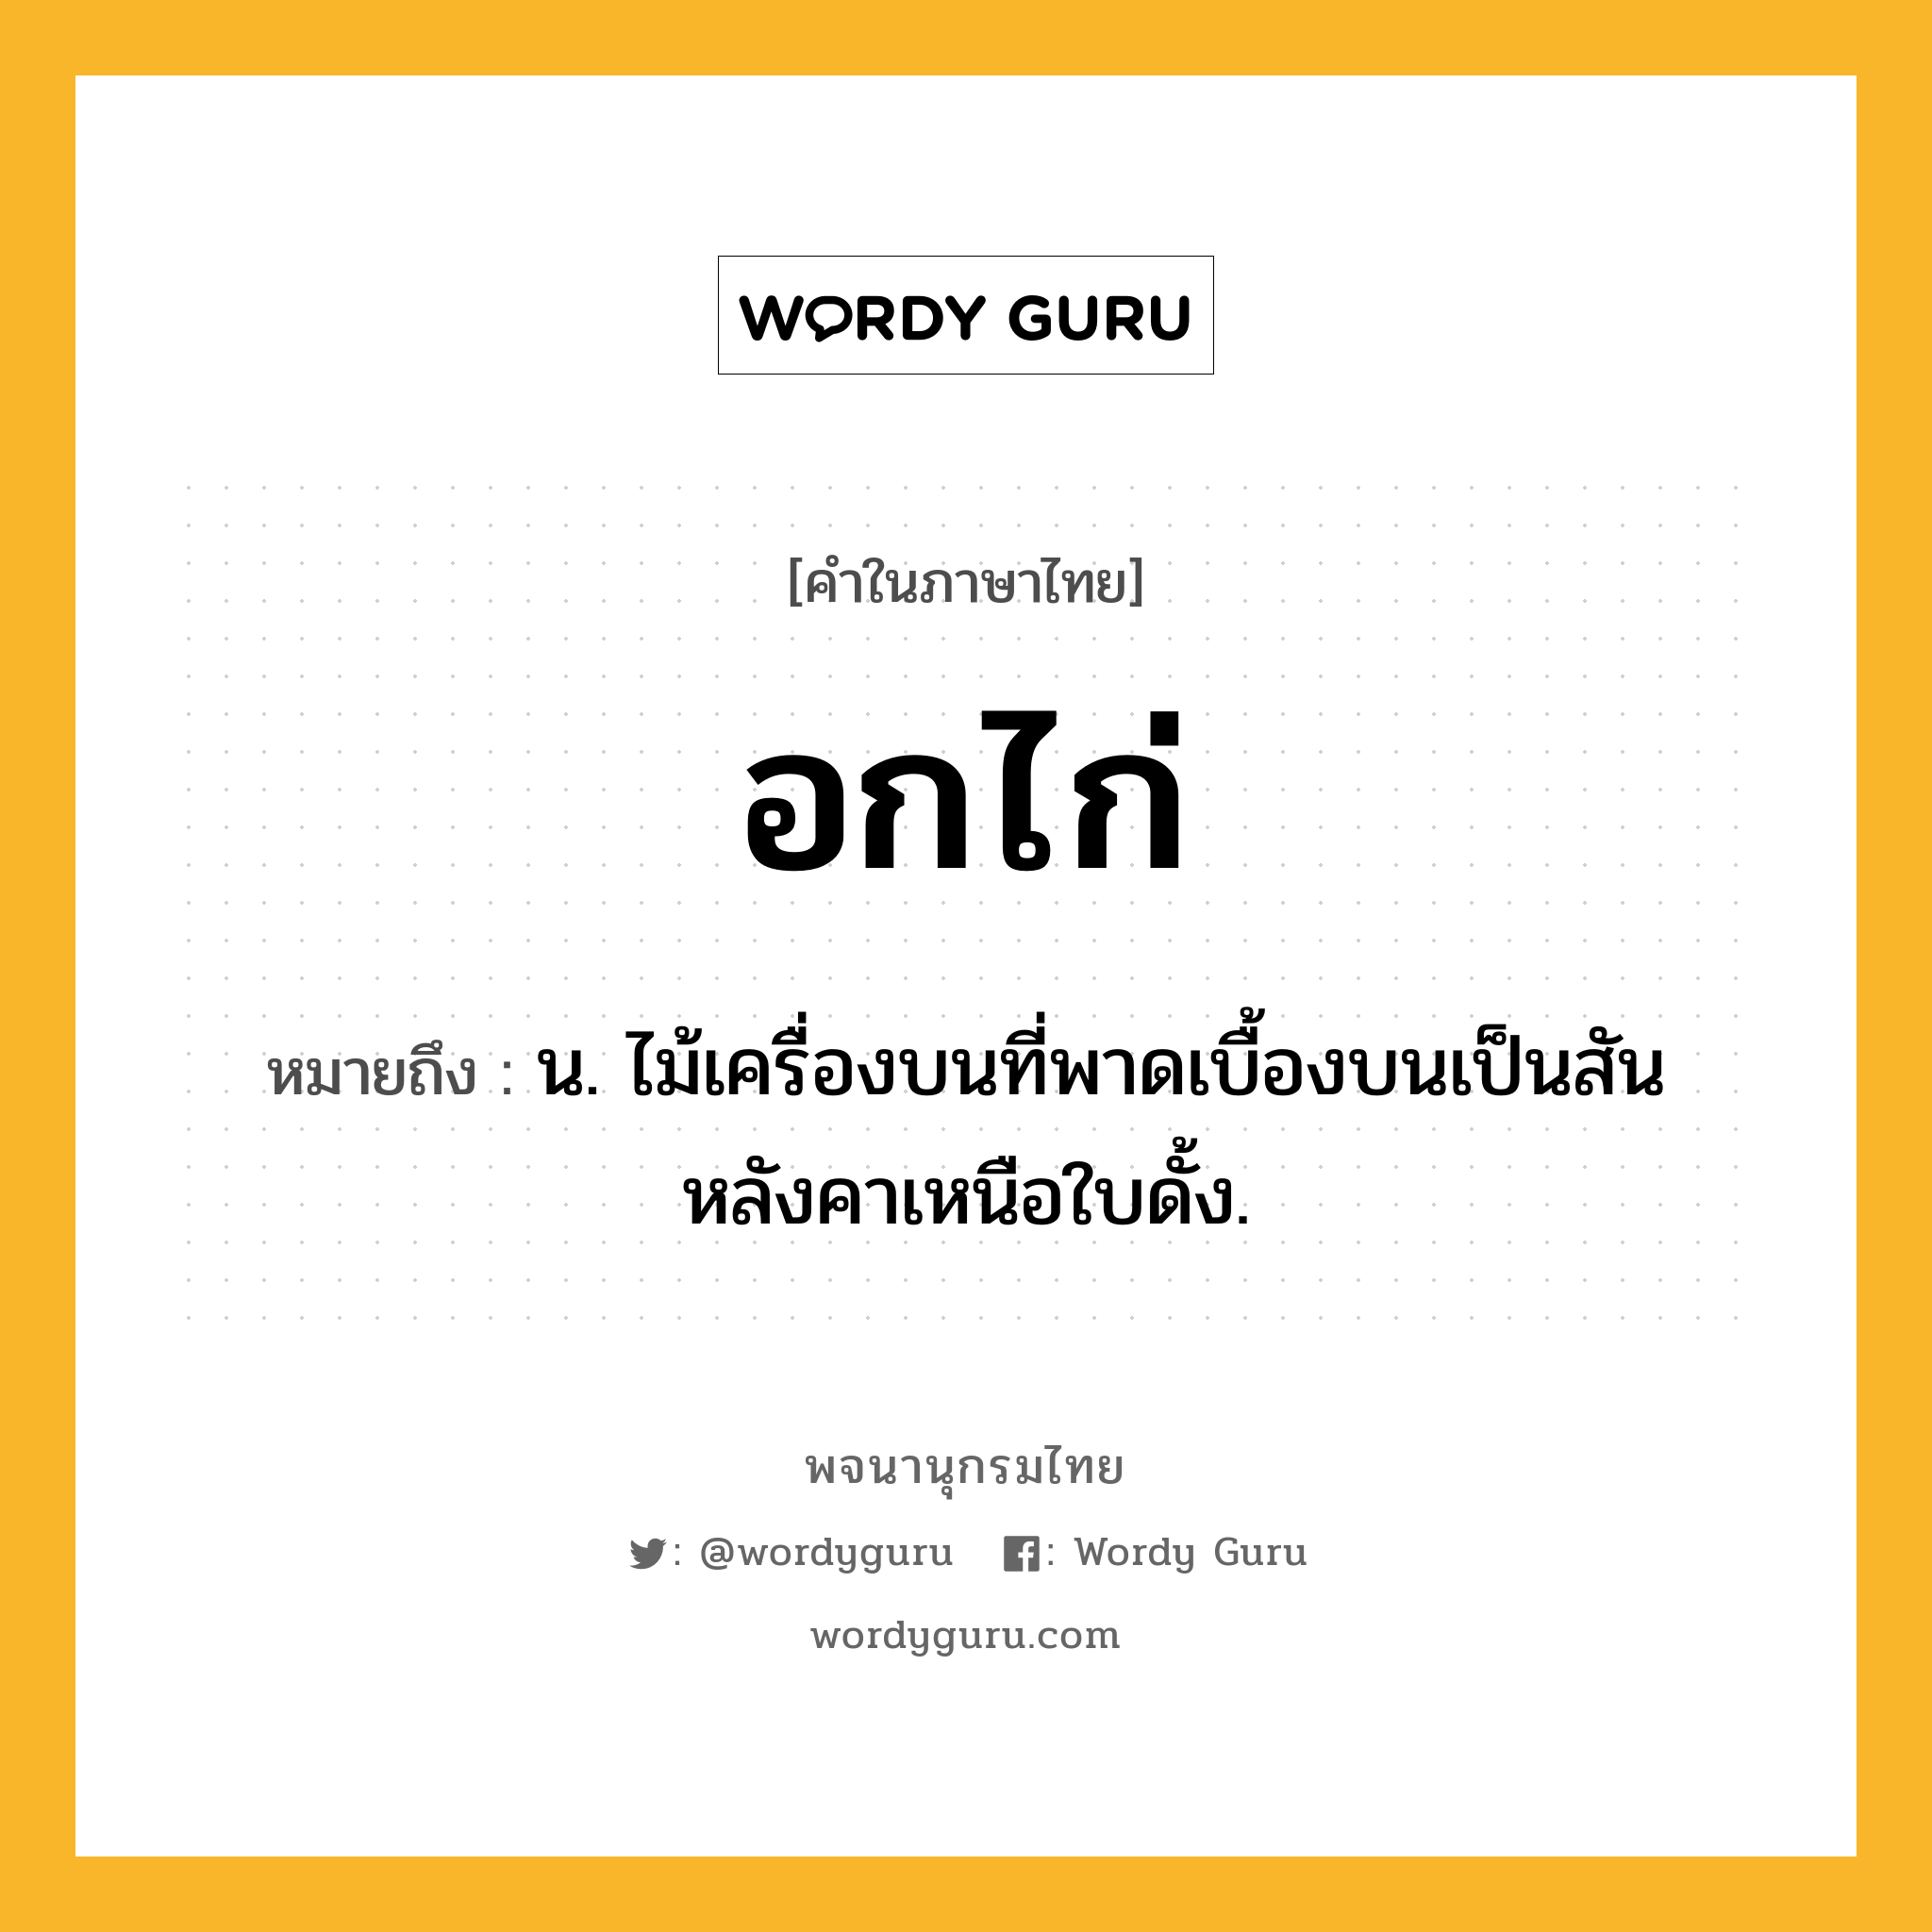 อกไก่ ความหมาย หมายถึงอะไร?, คำในภาษาไทย อกไก่ หมายถึง น. ไม้เครื่องบนที่พาดเบื้องบนเป็นสันหลังคาเหนือใบดั้ง.